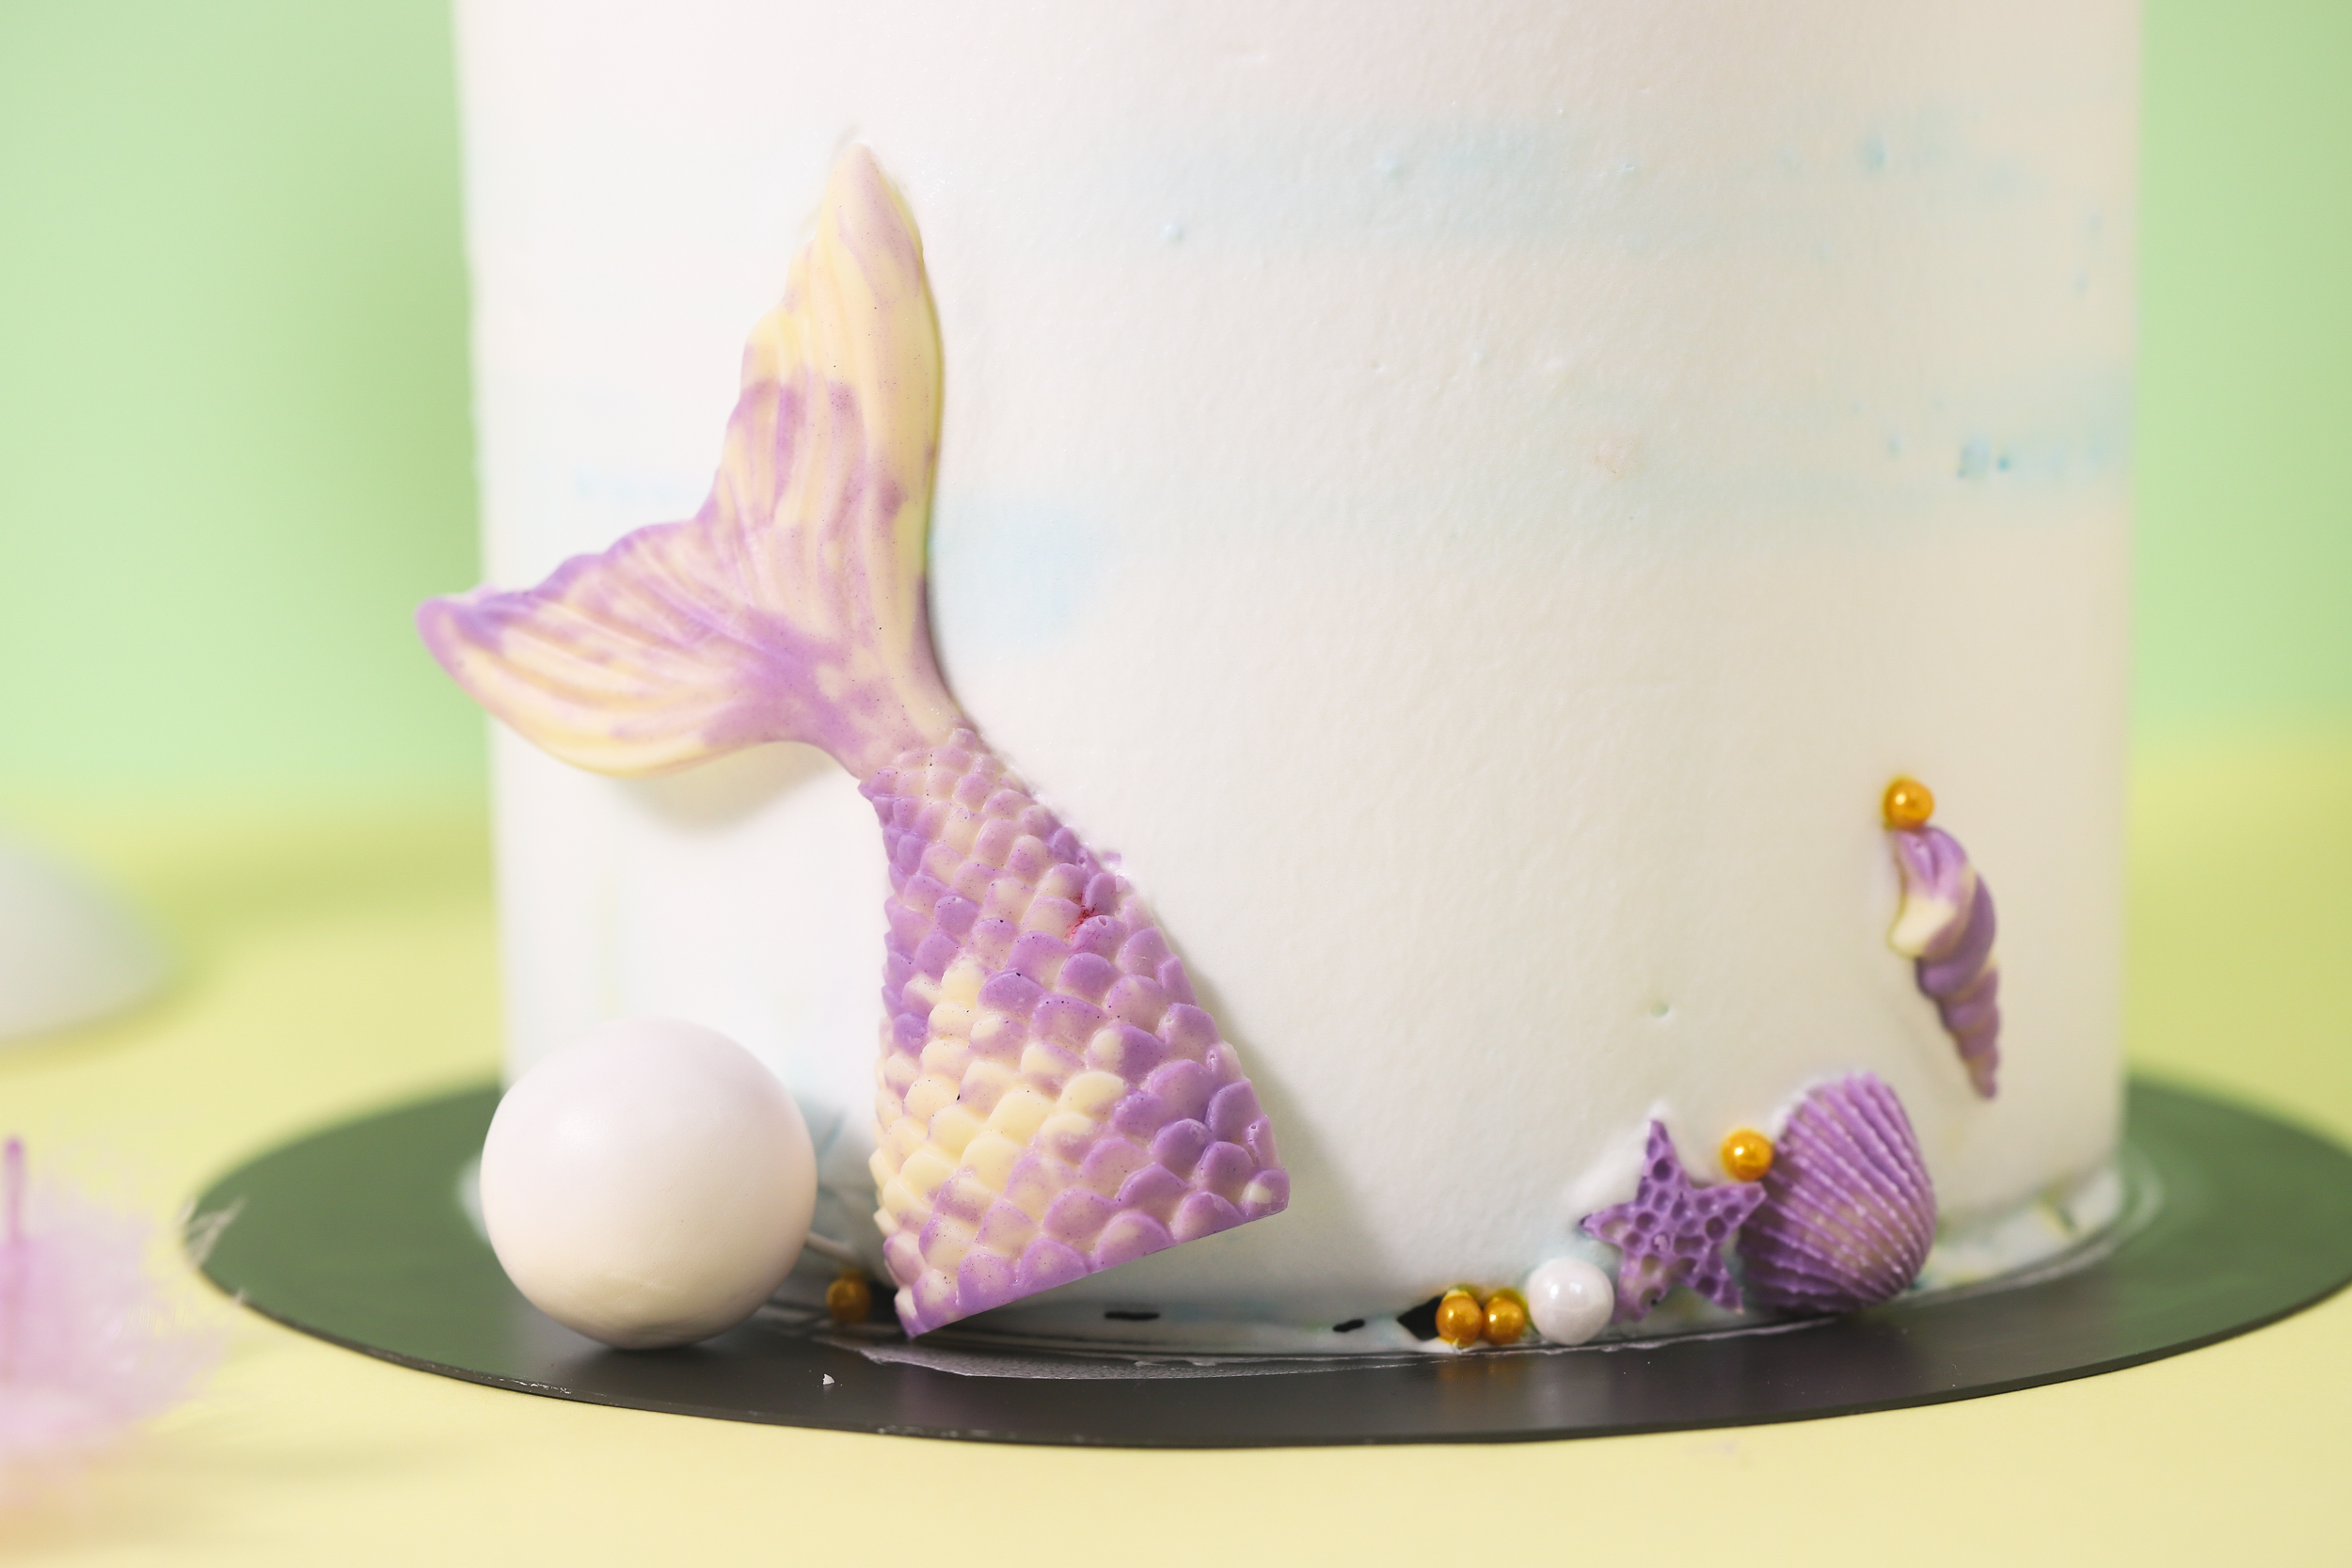 美人鱼生日蛋糕 库存照片. 图片 包括有 埃米莉, 美人鱼, 生日, 迪斯尼, 等级, 蛋糕, 阿里, 首先 - 90392890